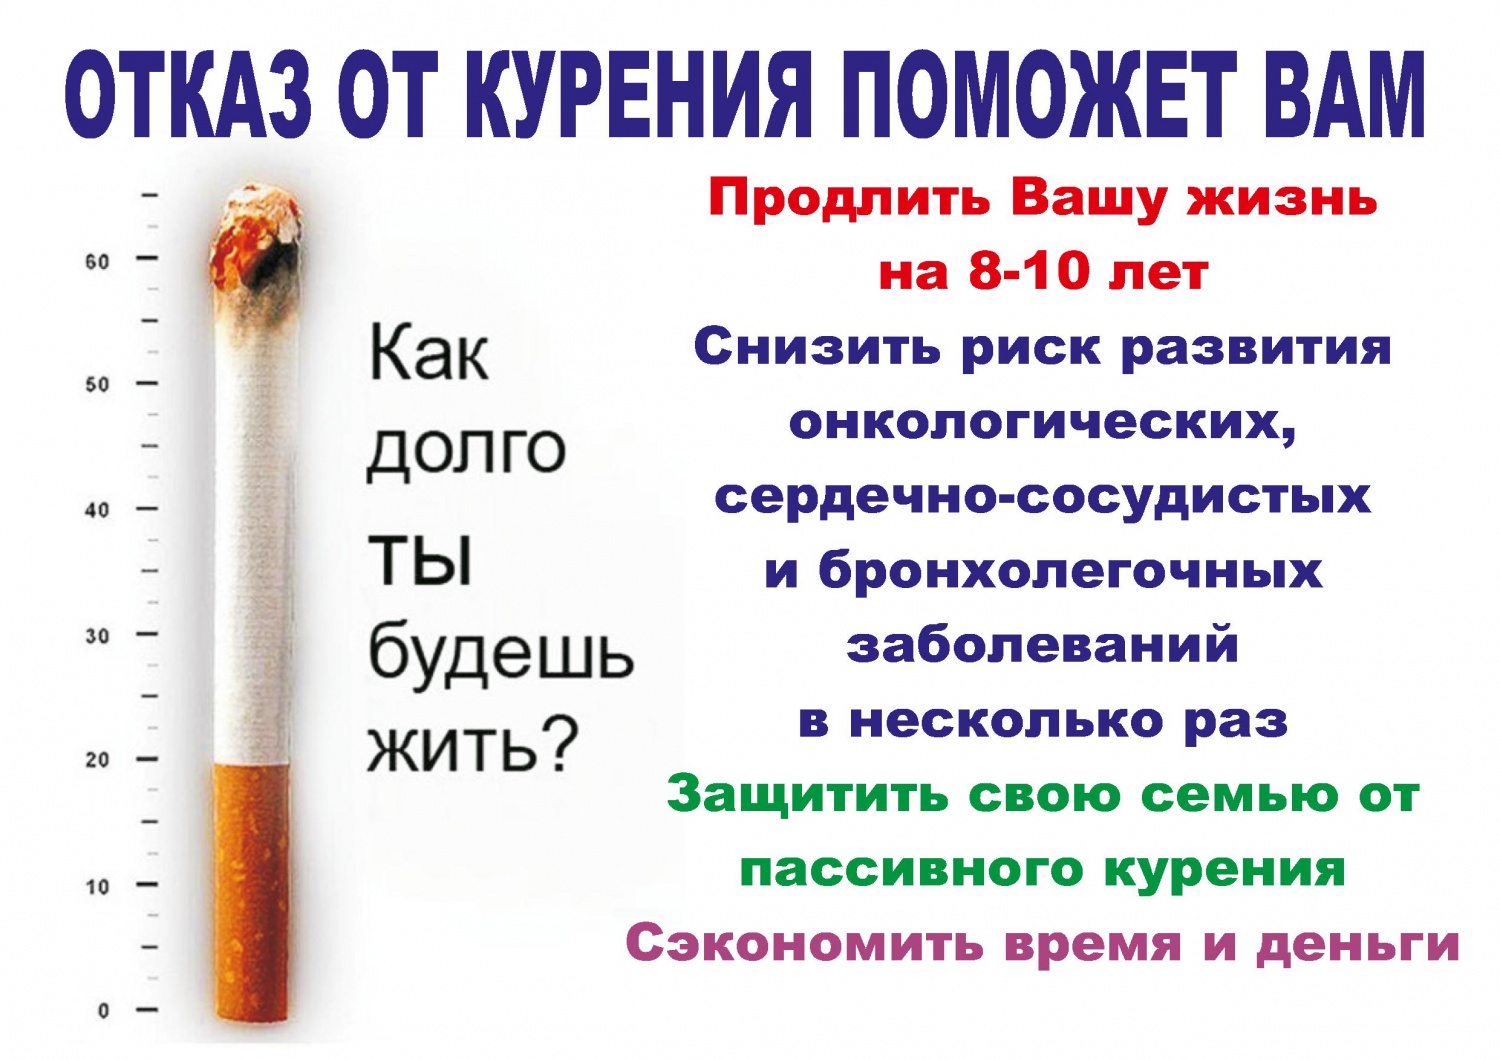 Отказ от курения поможет Вам.jpg